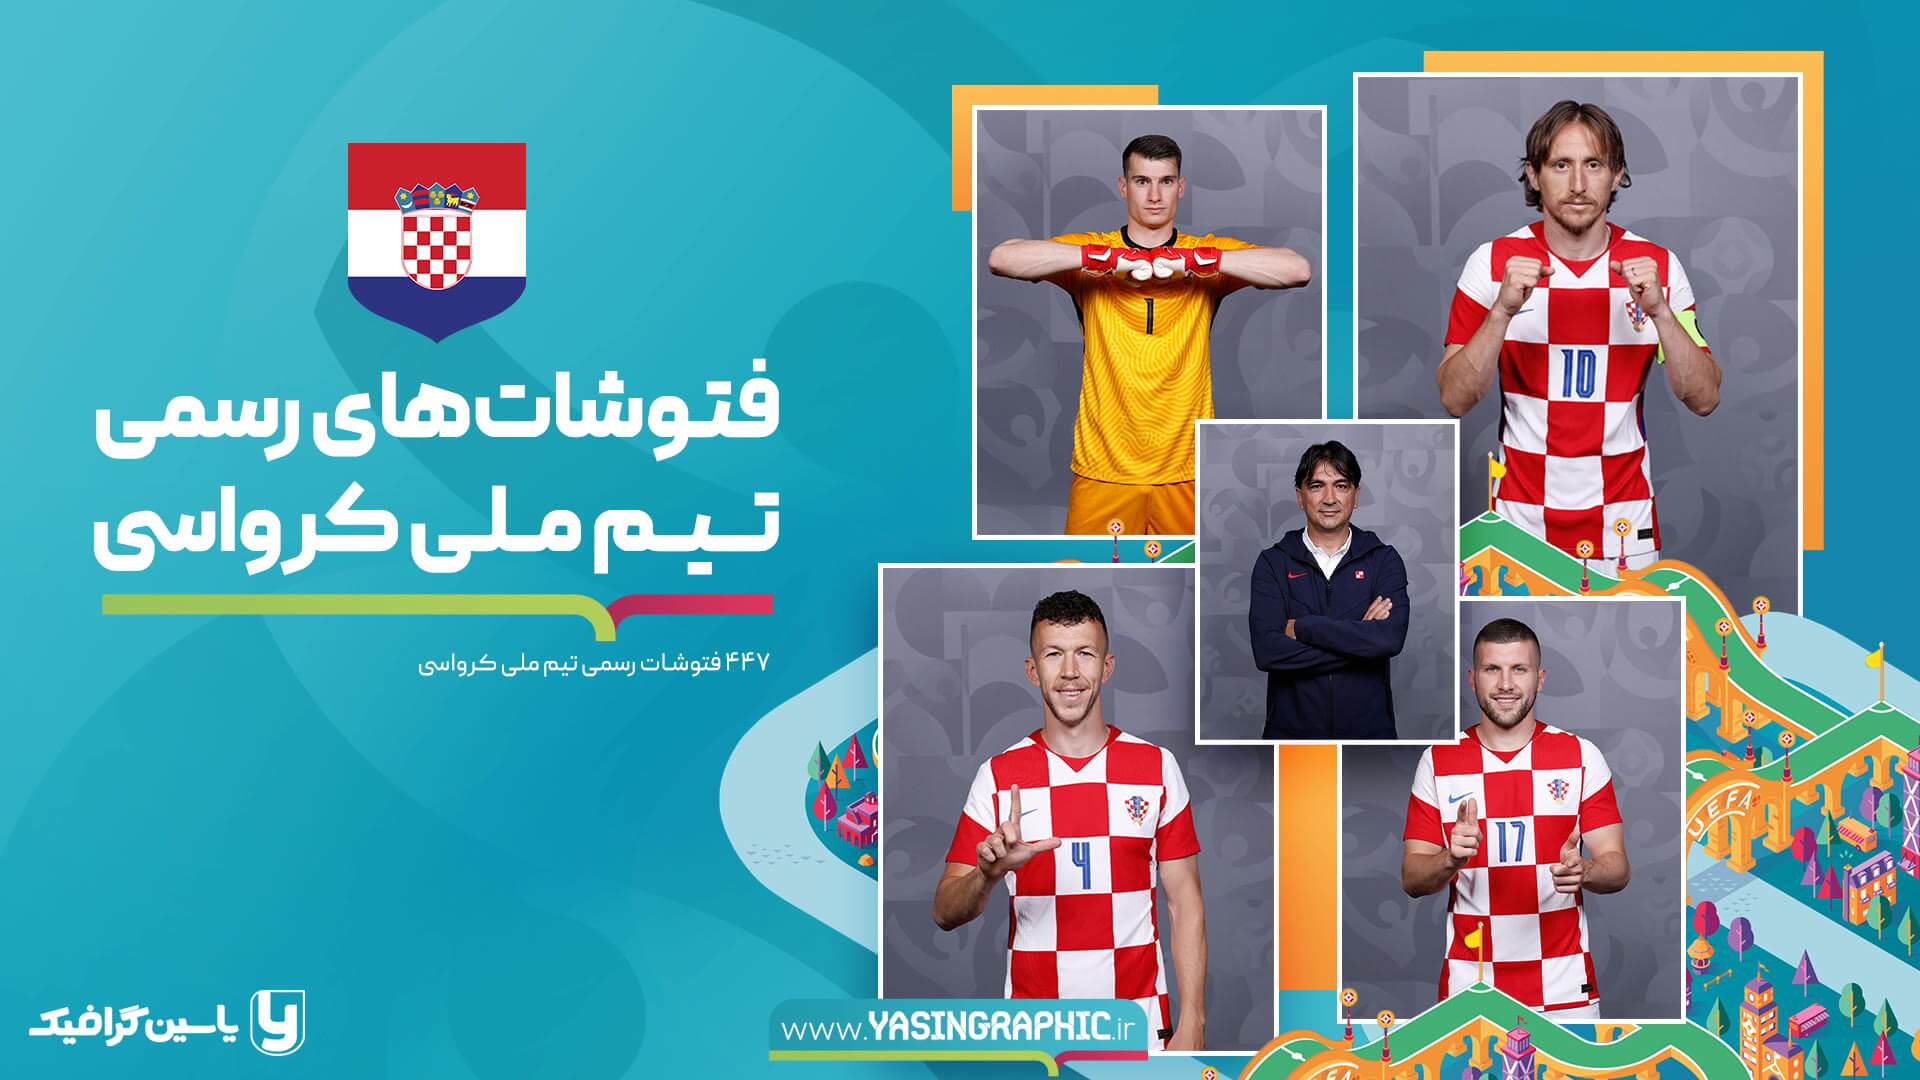 فتوشات های تیم ملی کرواسی - یورو 2020